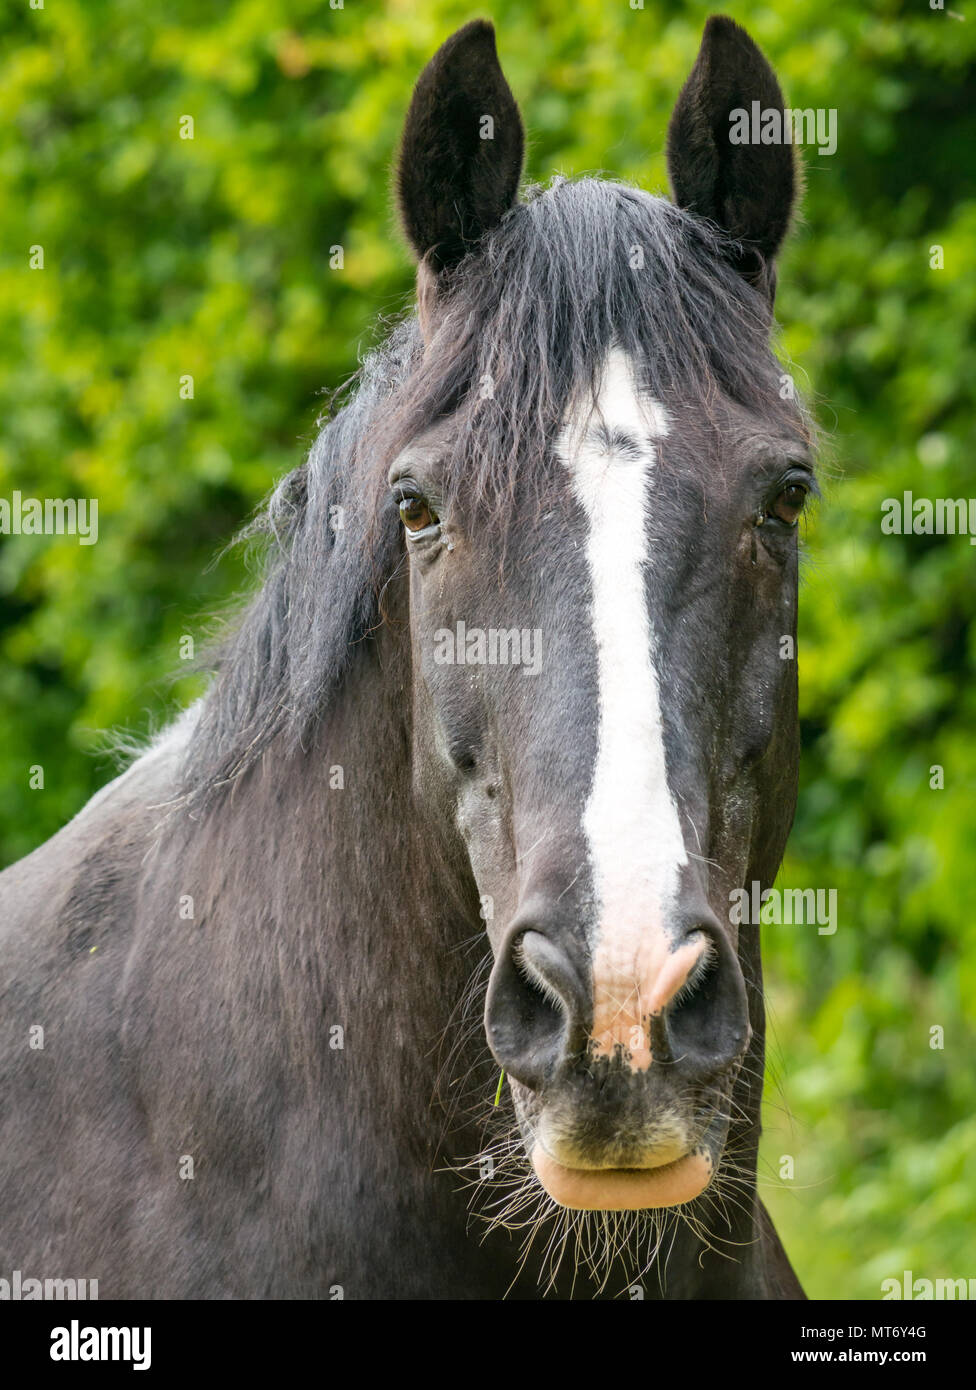 Nahaufnahme des wachsamen schwarzes Pferd Kopf mit weißer Blesse gegen grüne Laub Hintergrund verschwommen Stockfoto